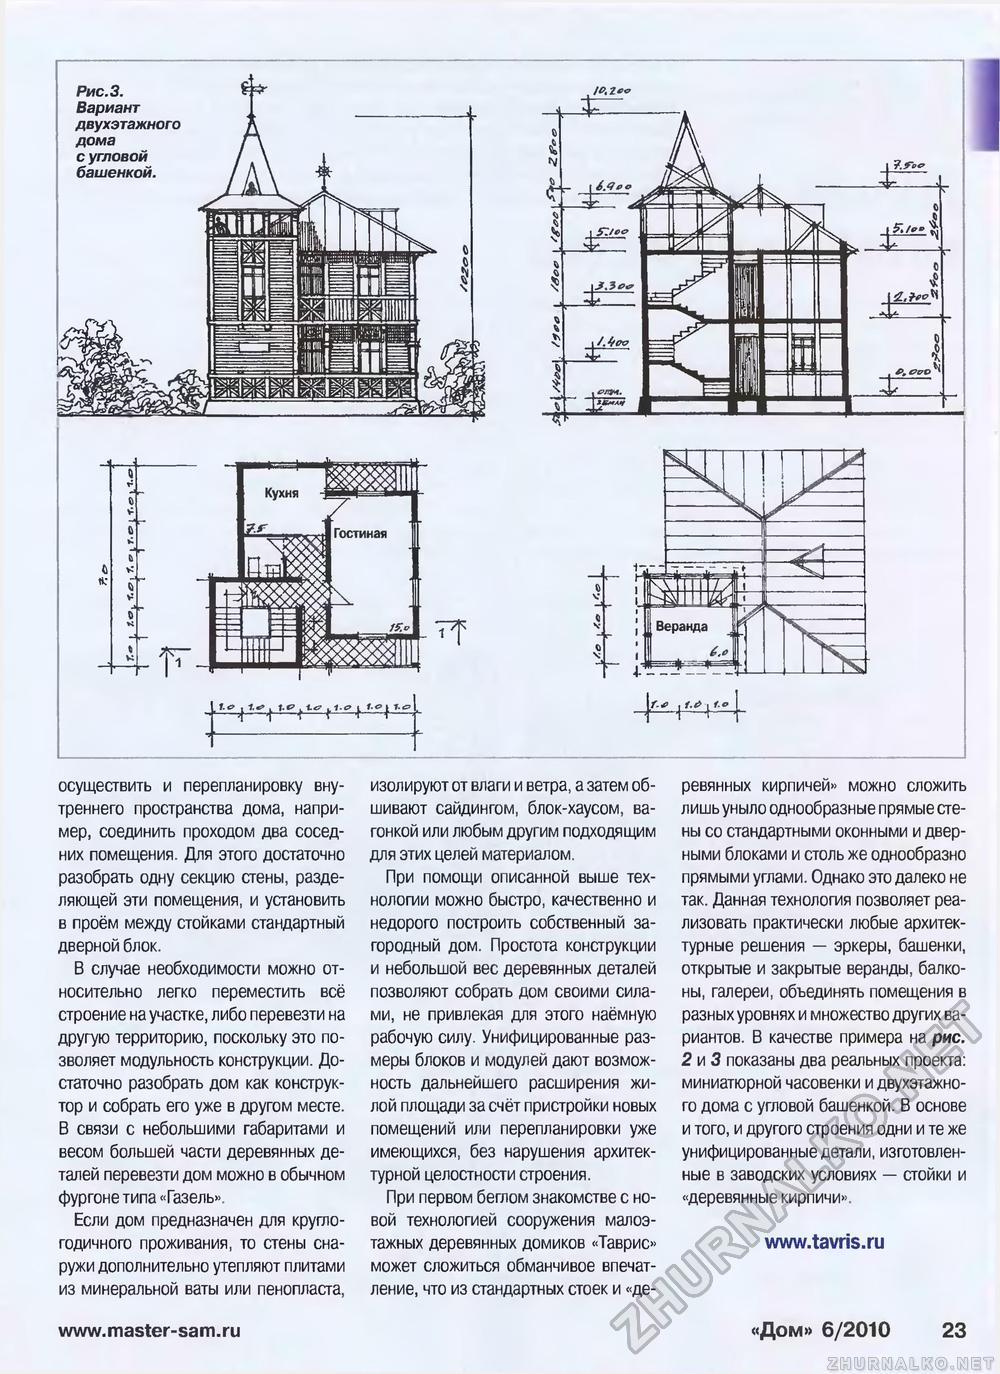 Дом 2010-06, страница 23